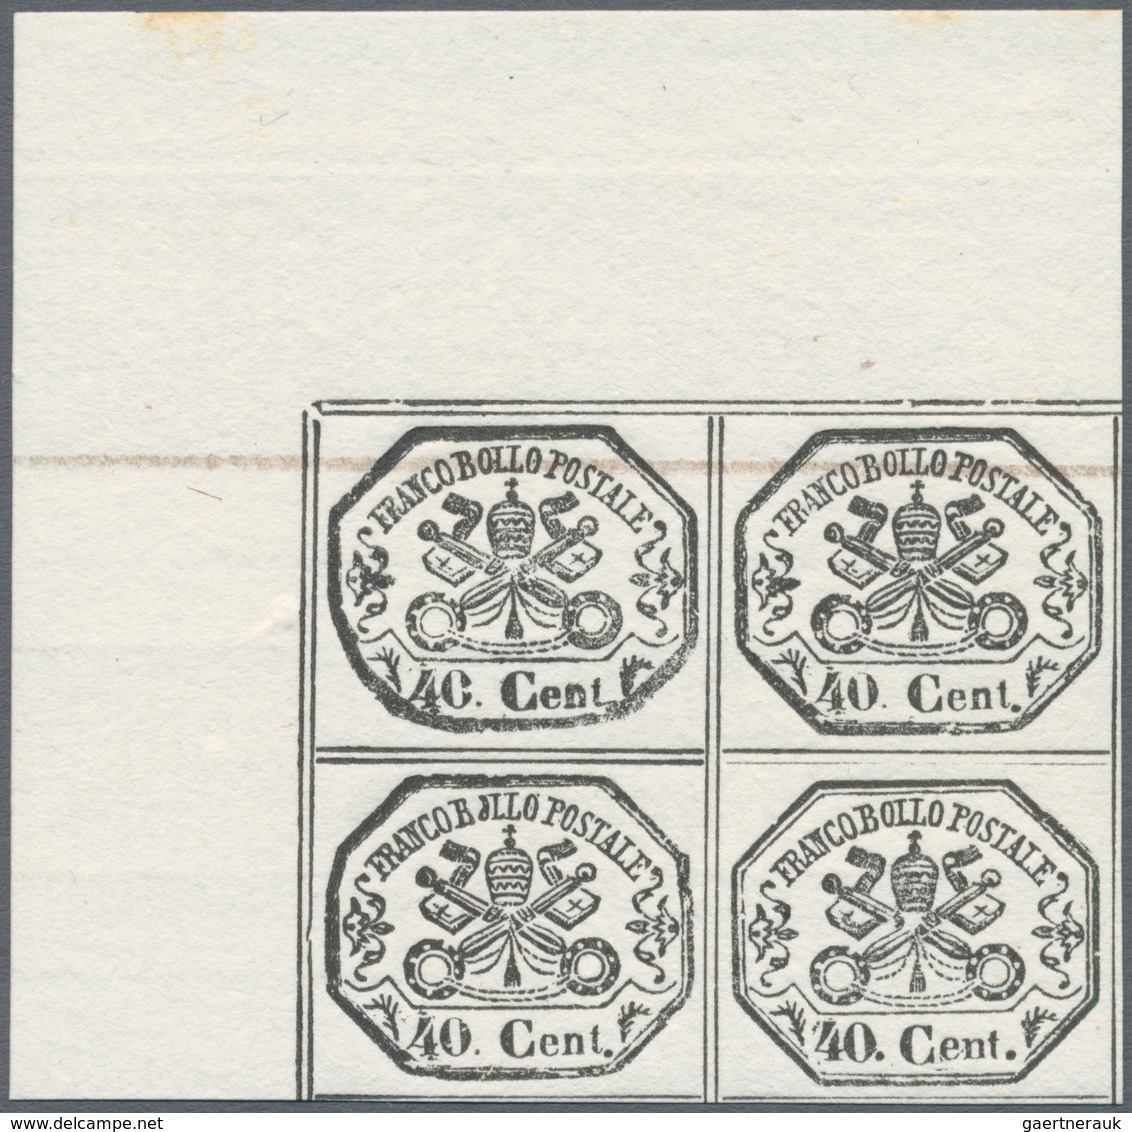 00728 Italien - Altitalienische Staaten: Kirchenstaat: 1889: reprints of MOENS on white paper, two series